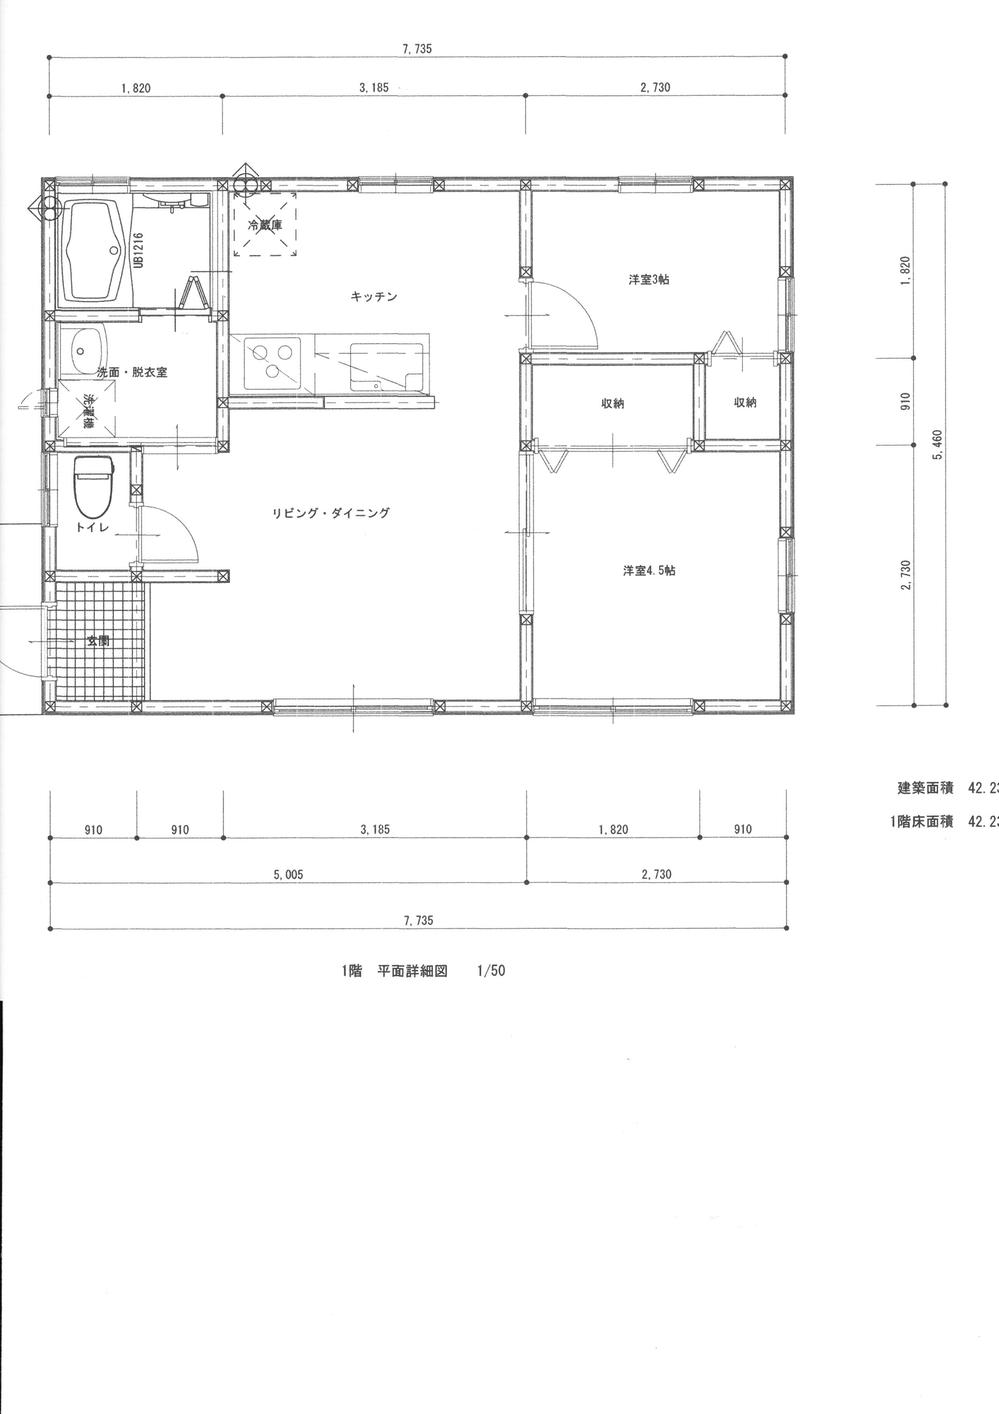 Floor plan. 9.8 million yen, 2LDK, Land area 500 sq m , Building area 42.23 sq m